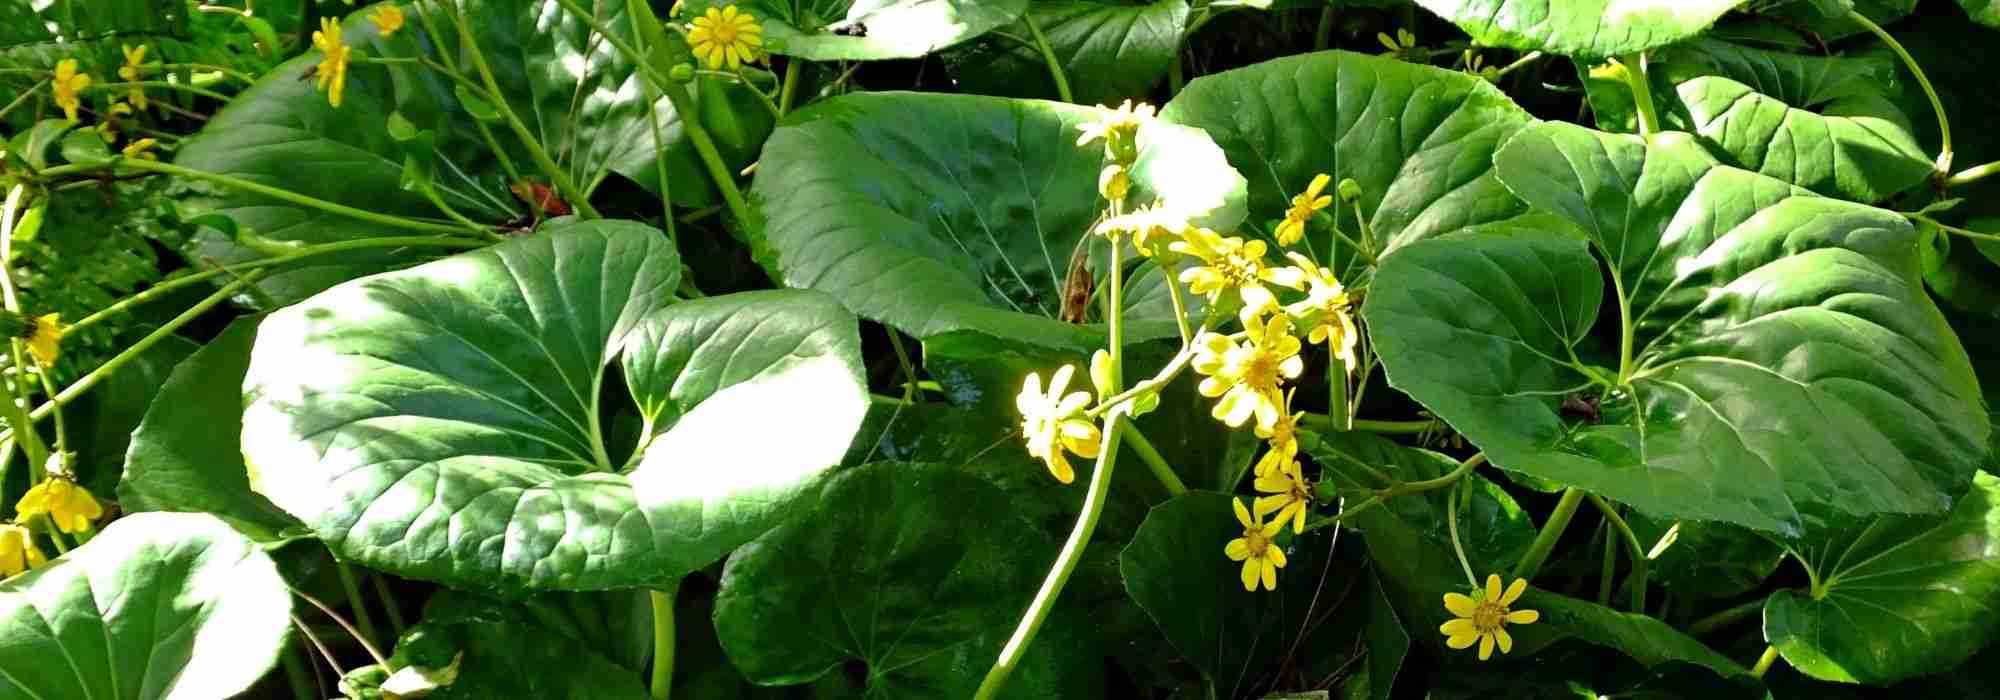 Farfugium japonicum : planter, cultiver et entretenir